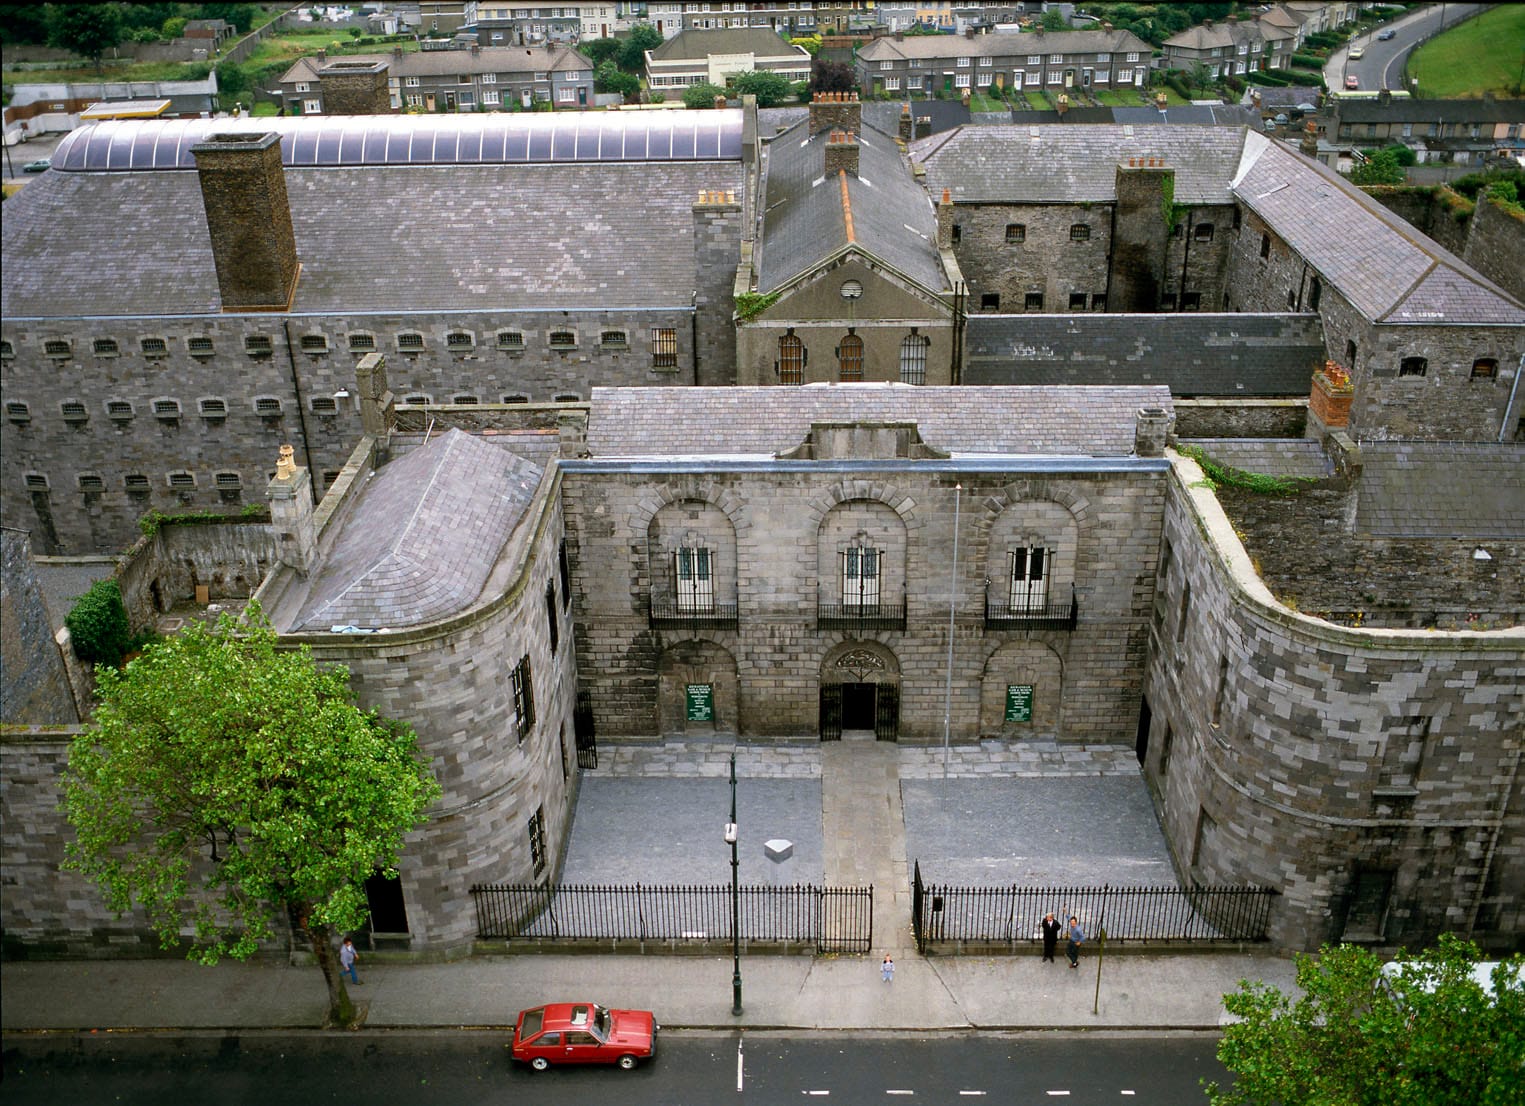 Kilmainham Gaol gilt als Hochburg des viktorianischen Strafvollzugs. Königin Viktoria (1837 bis 1901) vertraute sehr auf den erzieherischen Effekt der Inhaftierung. Hier kam das Guckloch zum Einsatz, durch das die Wärter die Insassen jederzeit kontrollieren konnten.